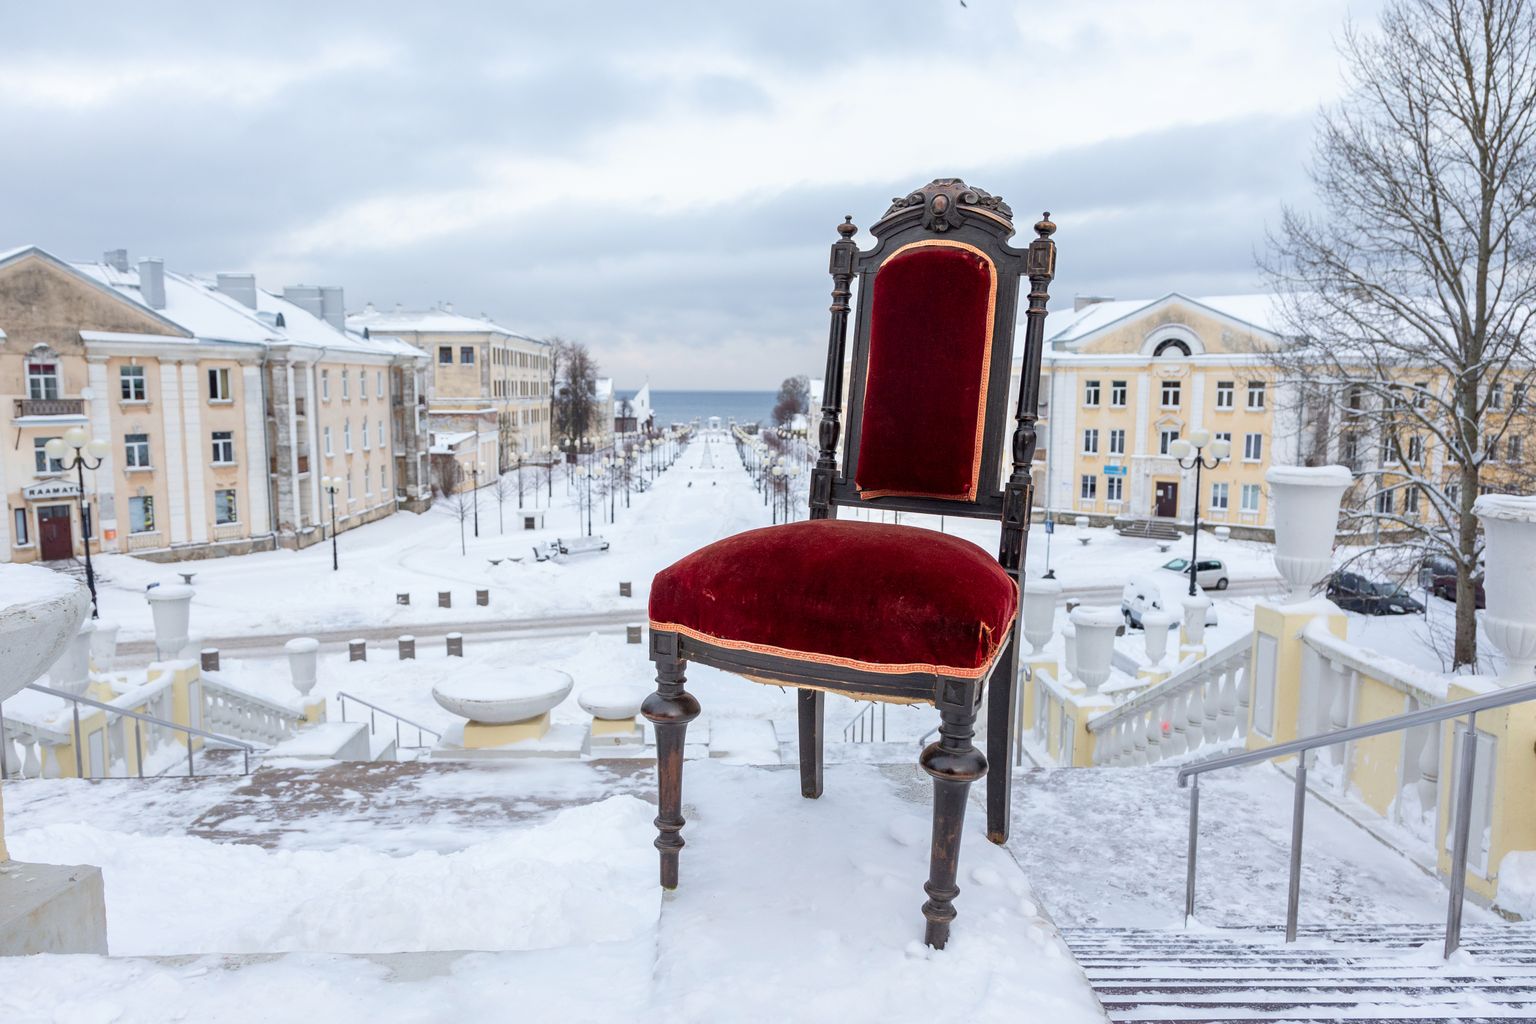 Saka mõisast pärit tool sobib Sillamäe promenaadile nagu valatult. Näitus "12 tooli. Päästetud" jääb avatuks jaanuari lõpuni.